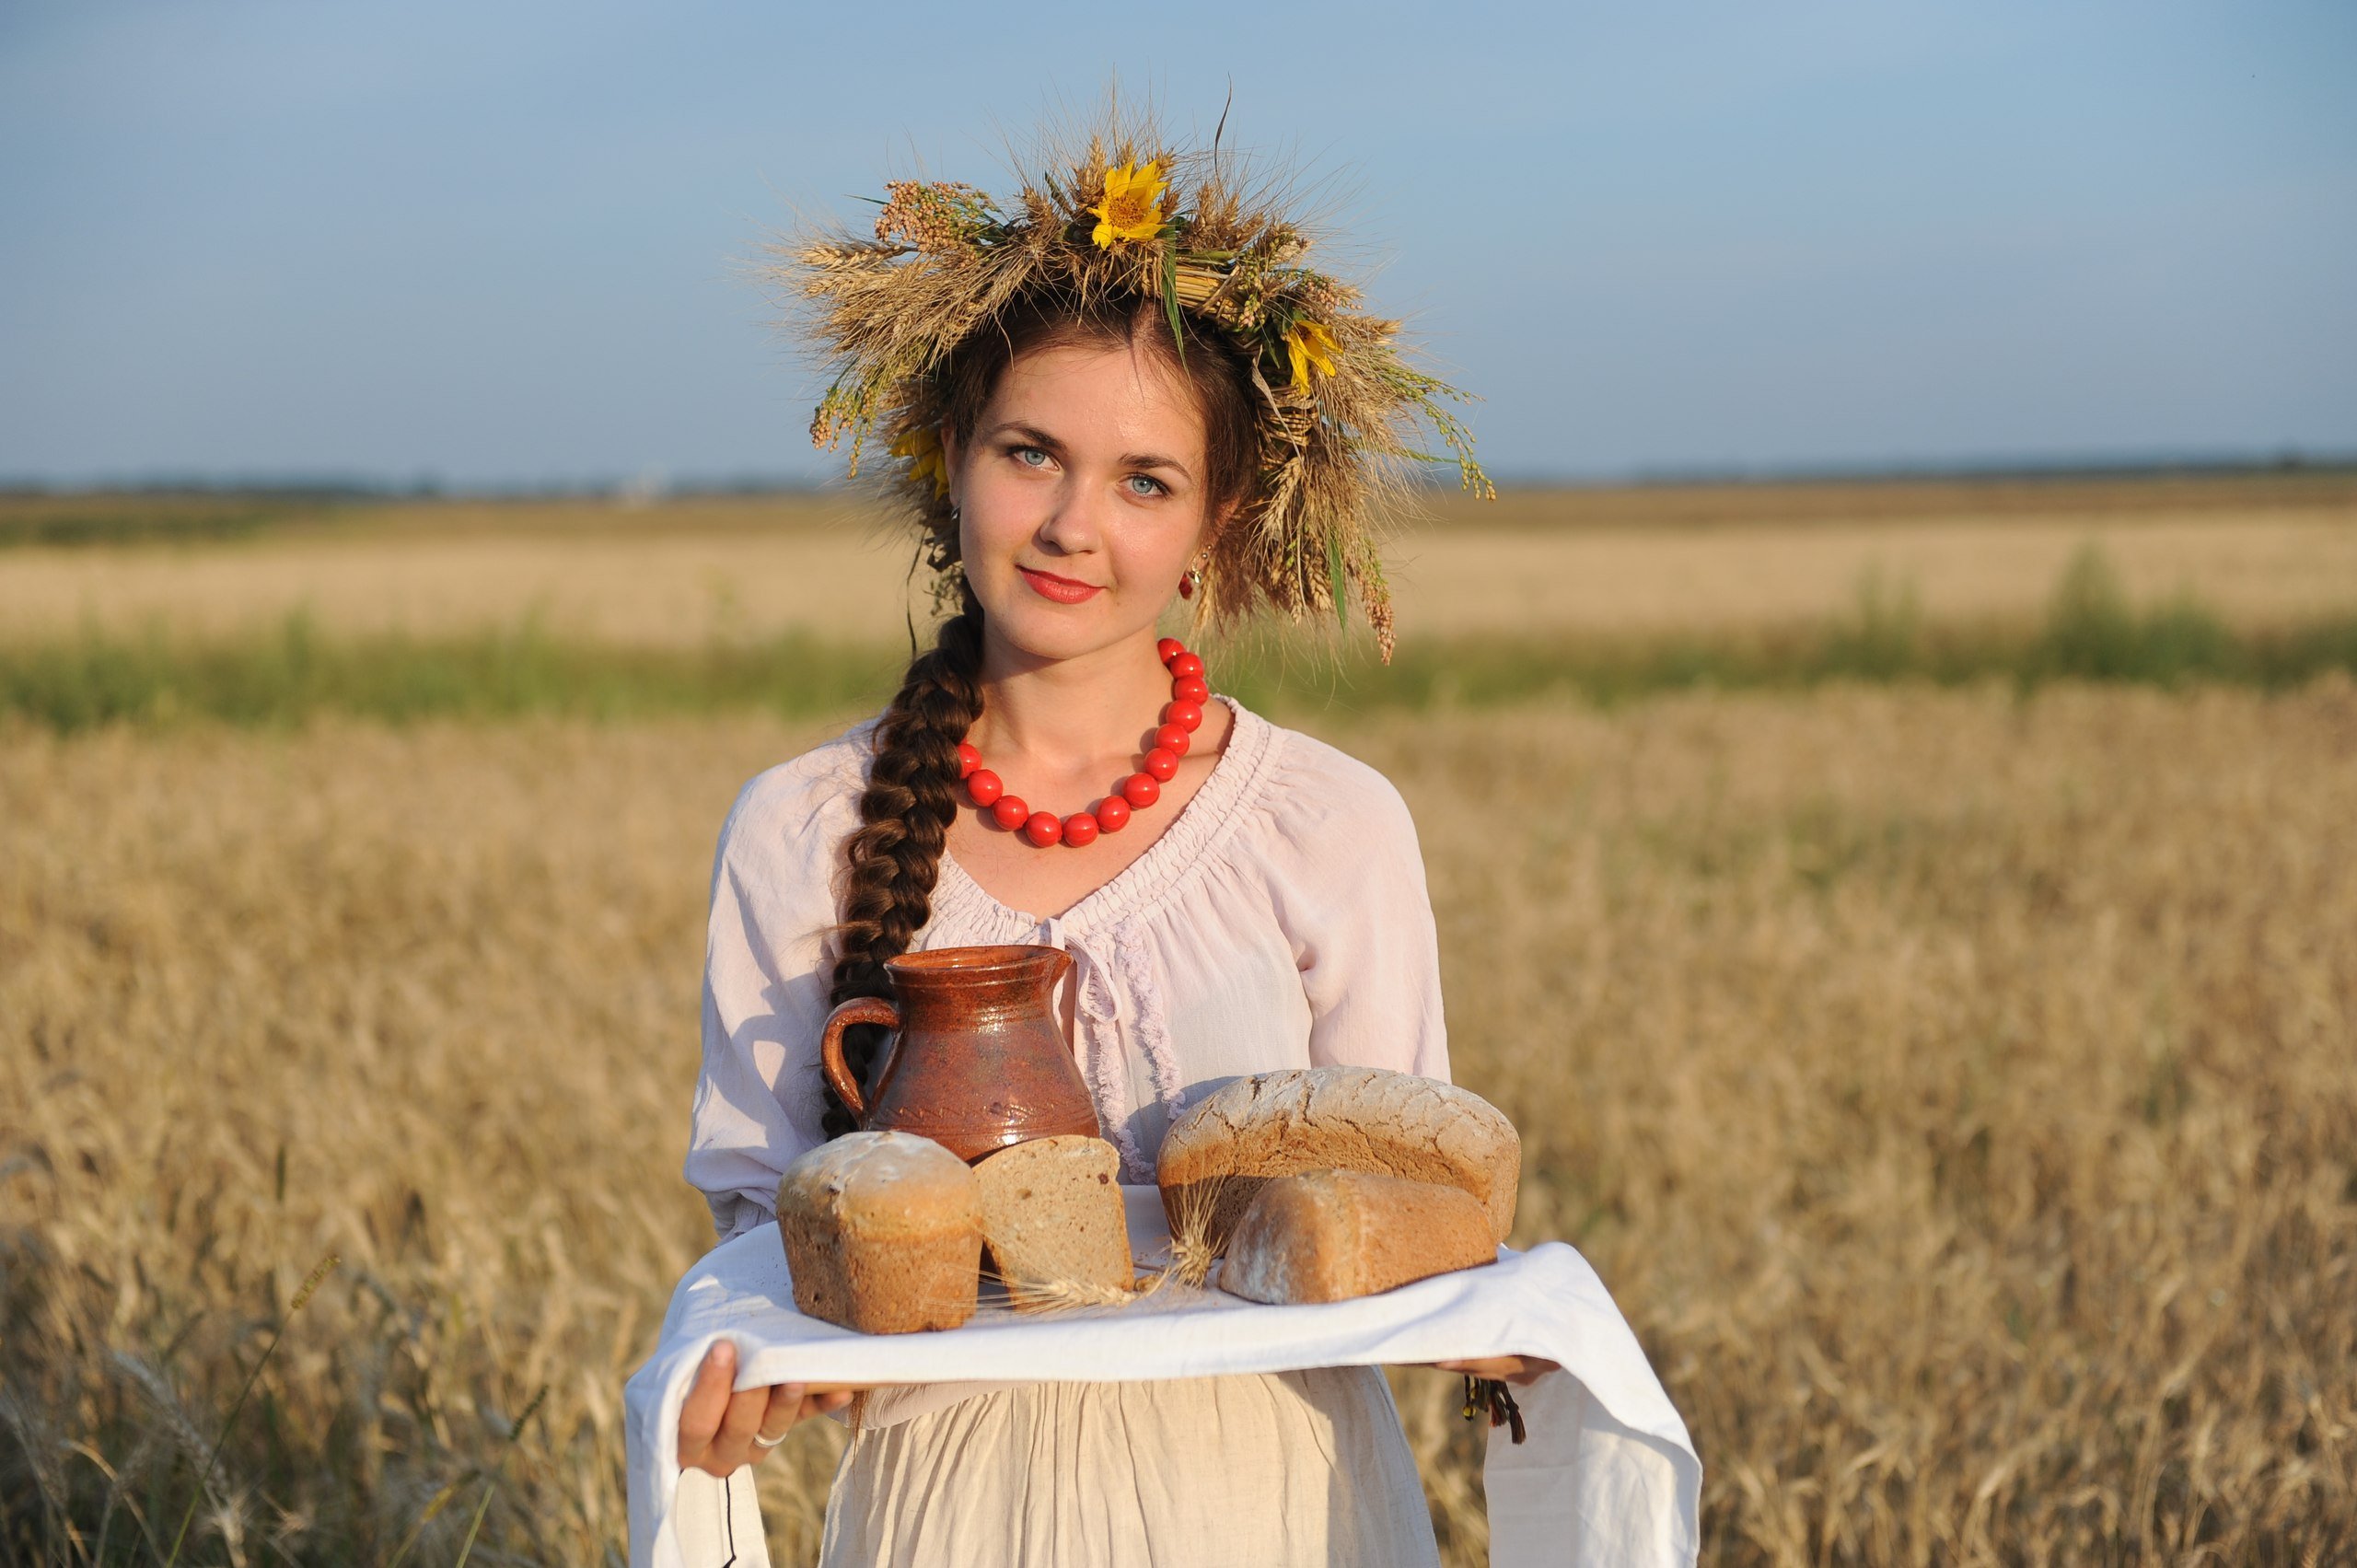 Наташа русская душа. Девушка с караваем. Девушка в народном костюме с караваем. Славянские девушки. Девушка с хлебом и солью.